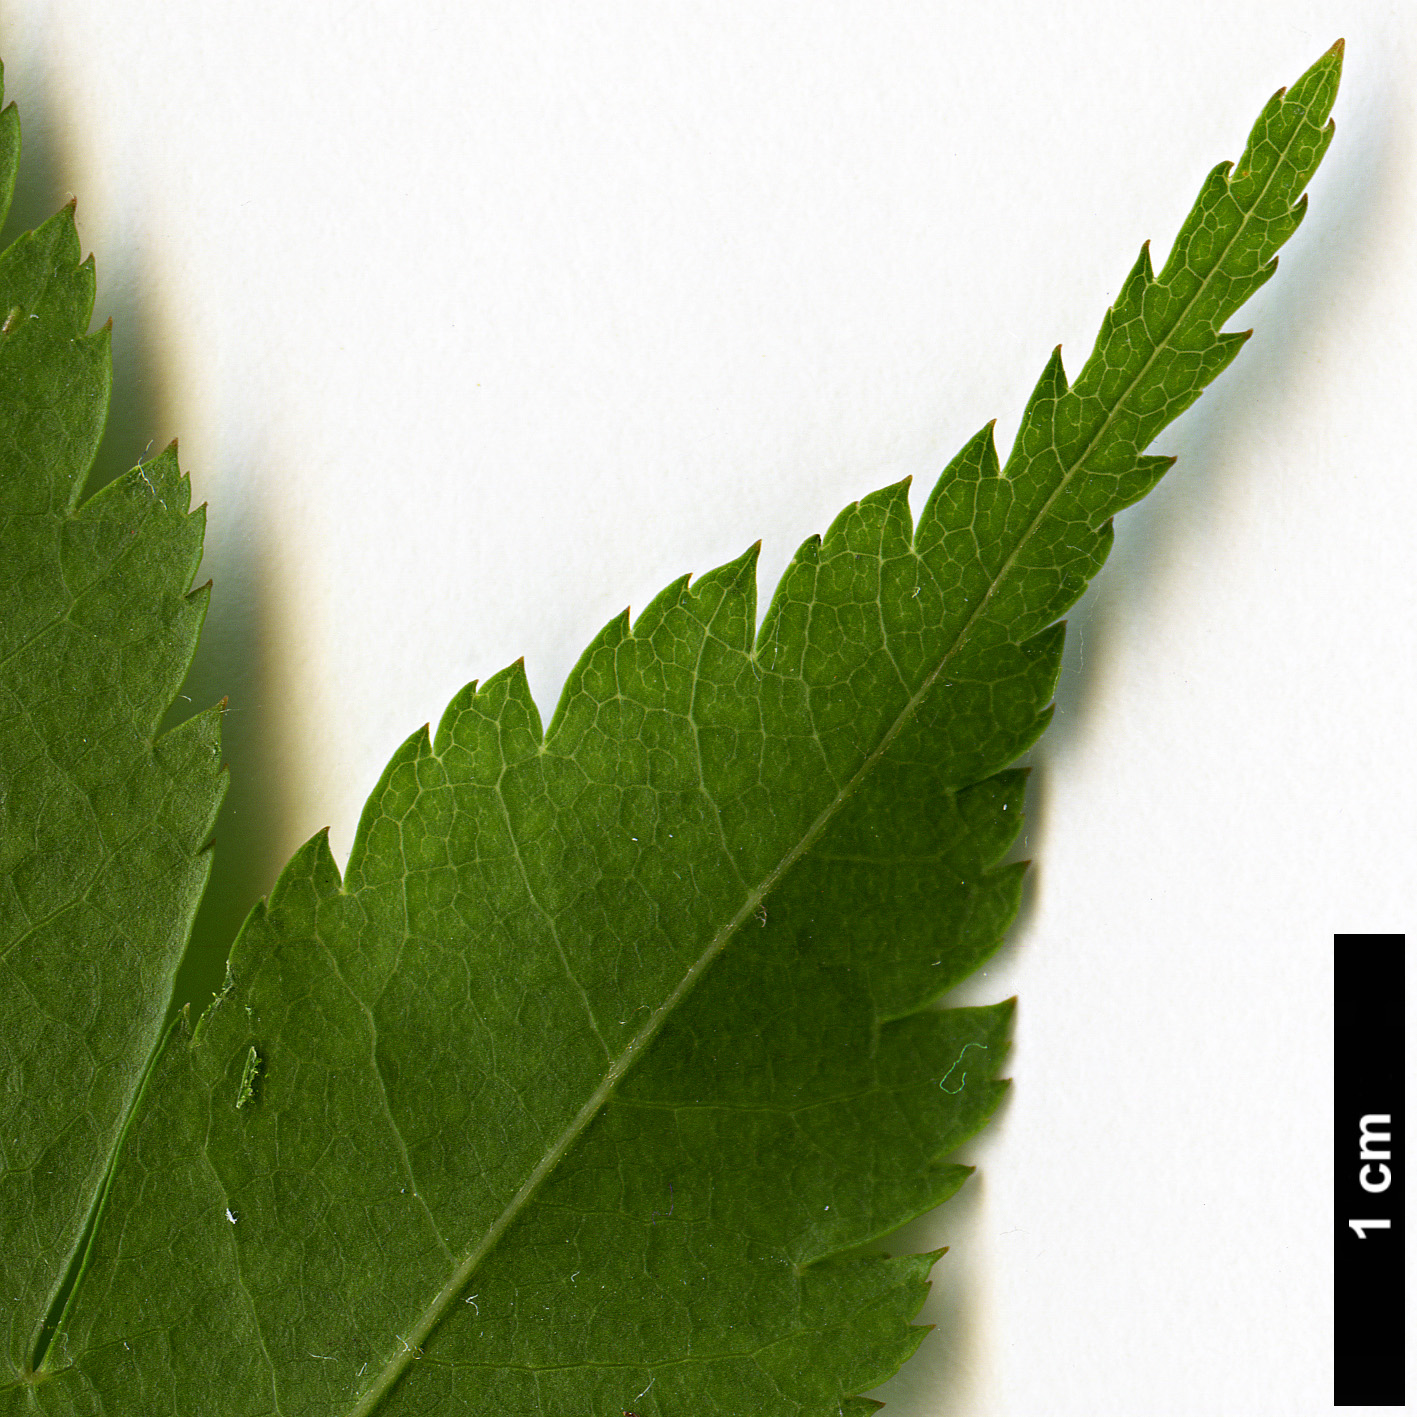 High resolution image: Family: Sapindaceae - Genus: Acer - Taxon: amoenum - SpeciesSub: var. matsumurae